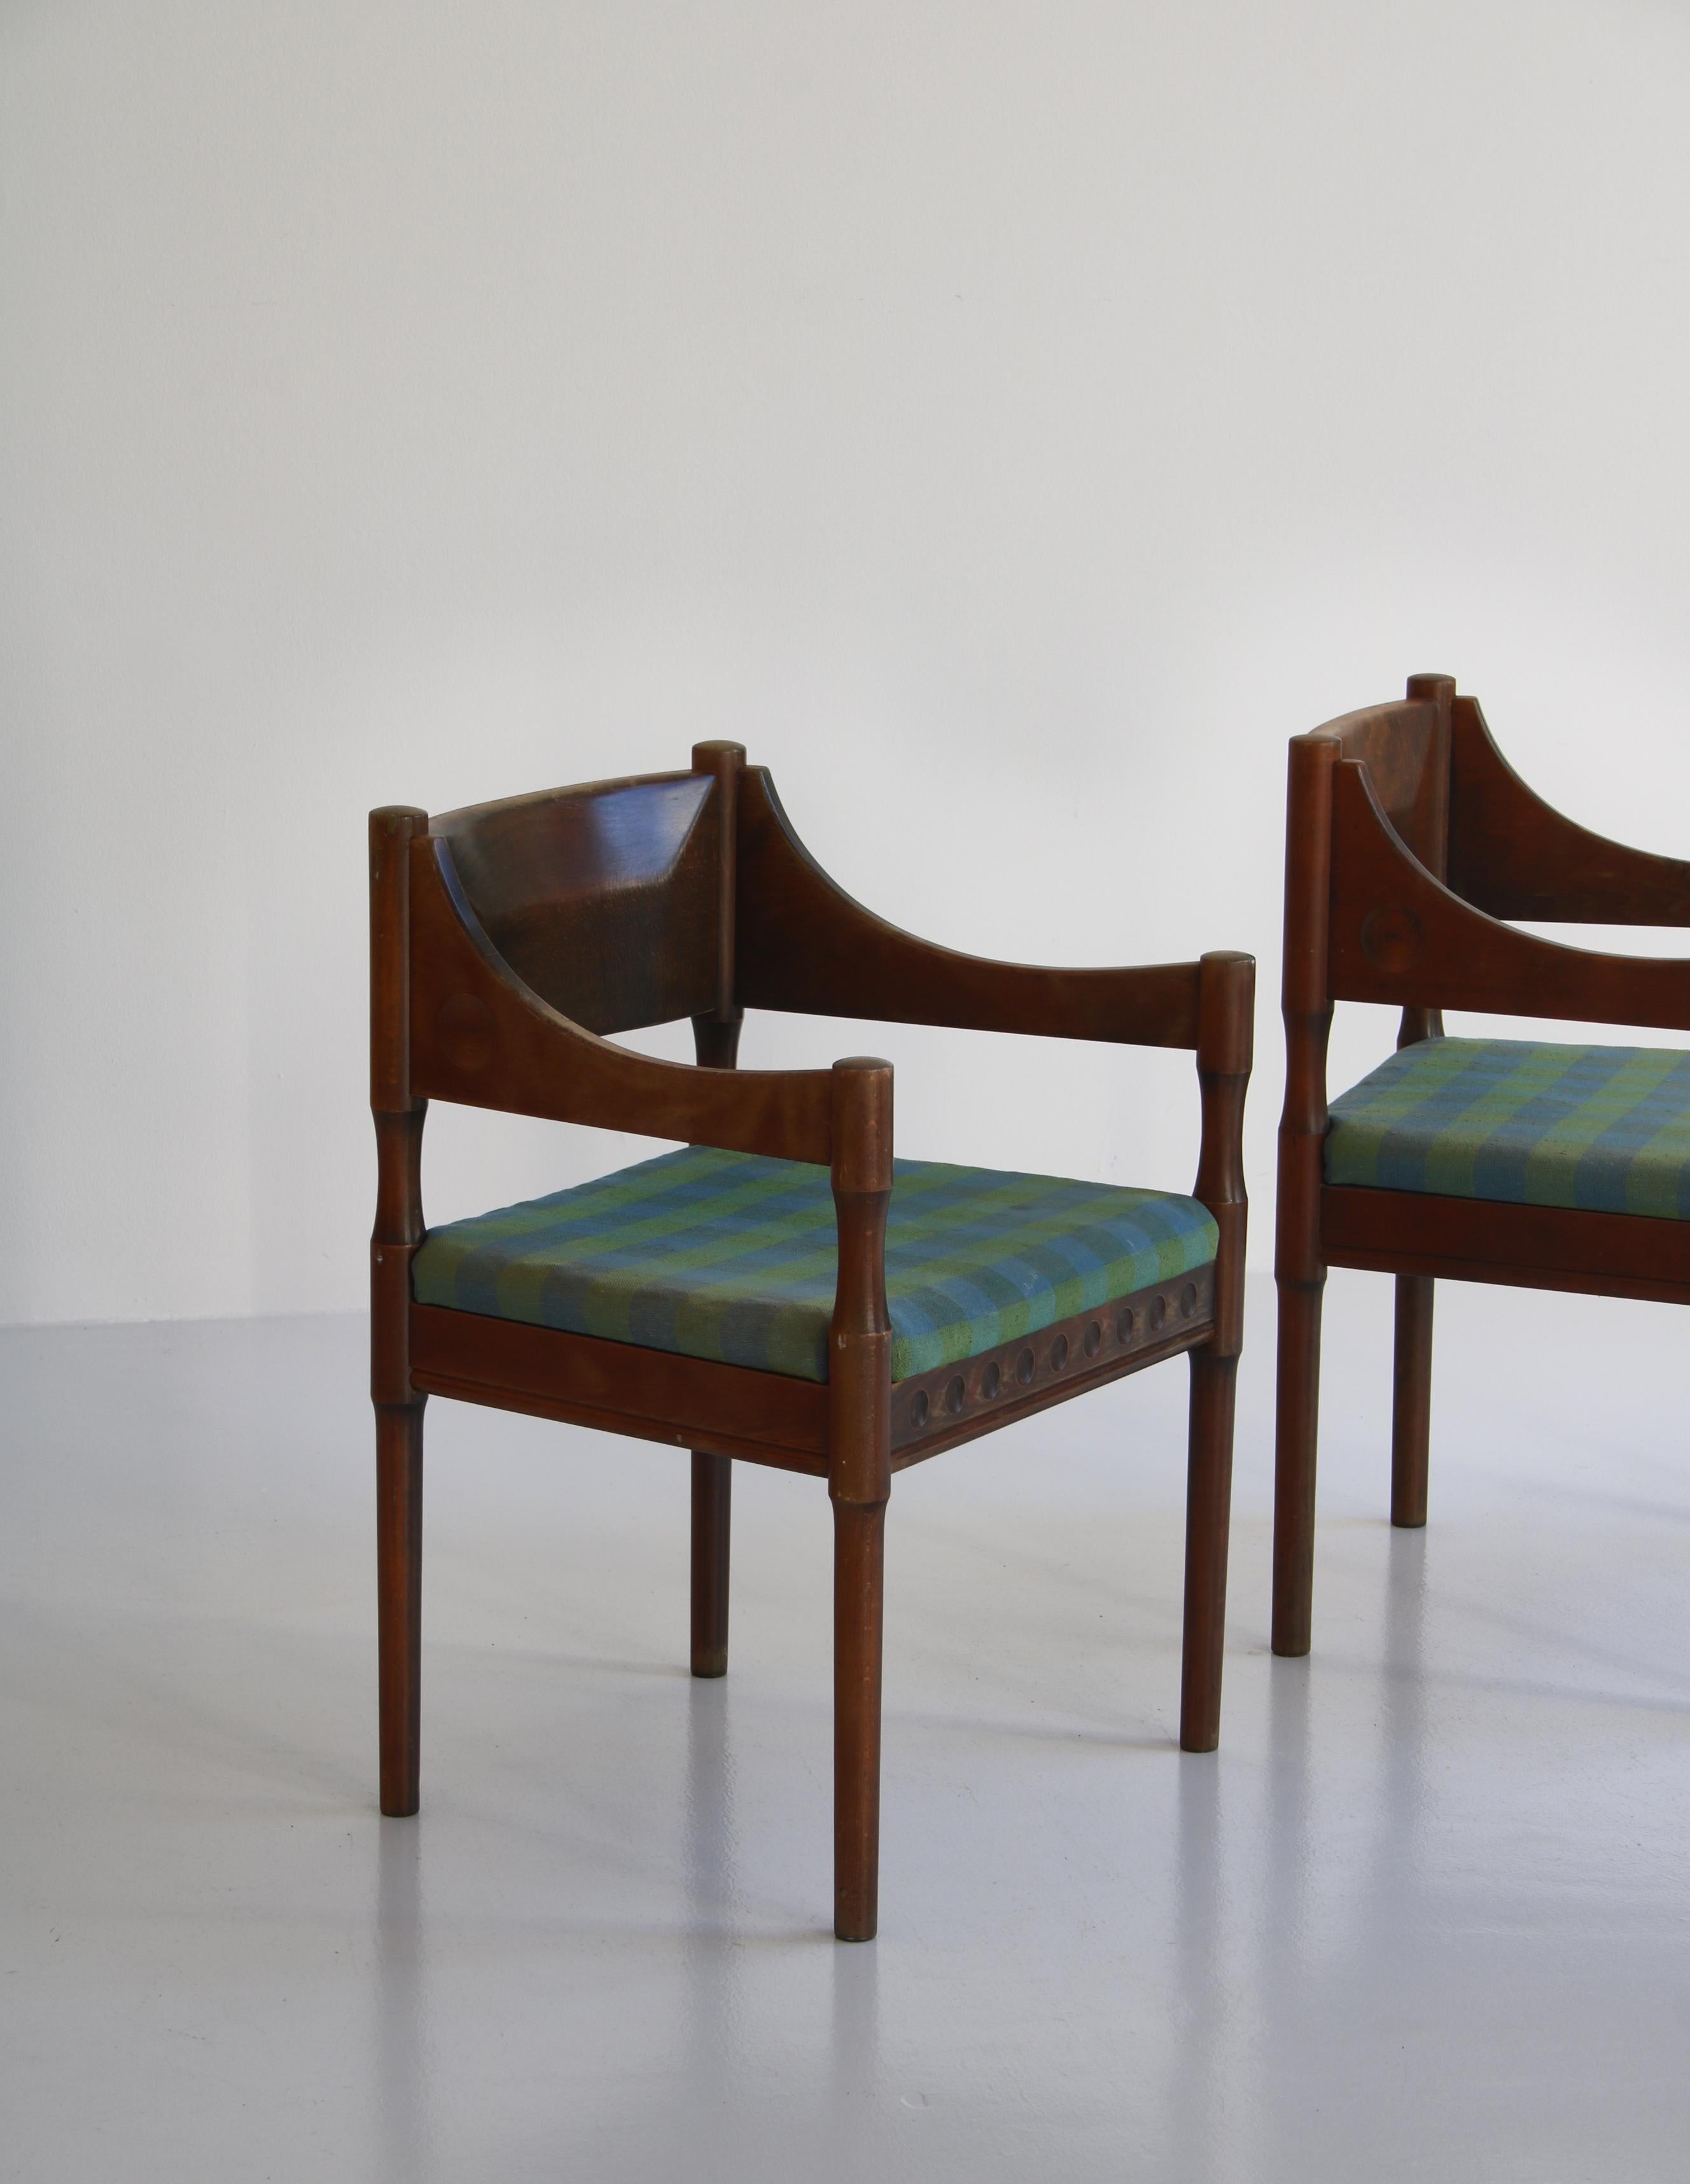 Pair of Scandinavian Modern Armchairs from 